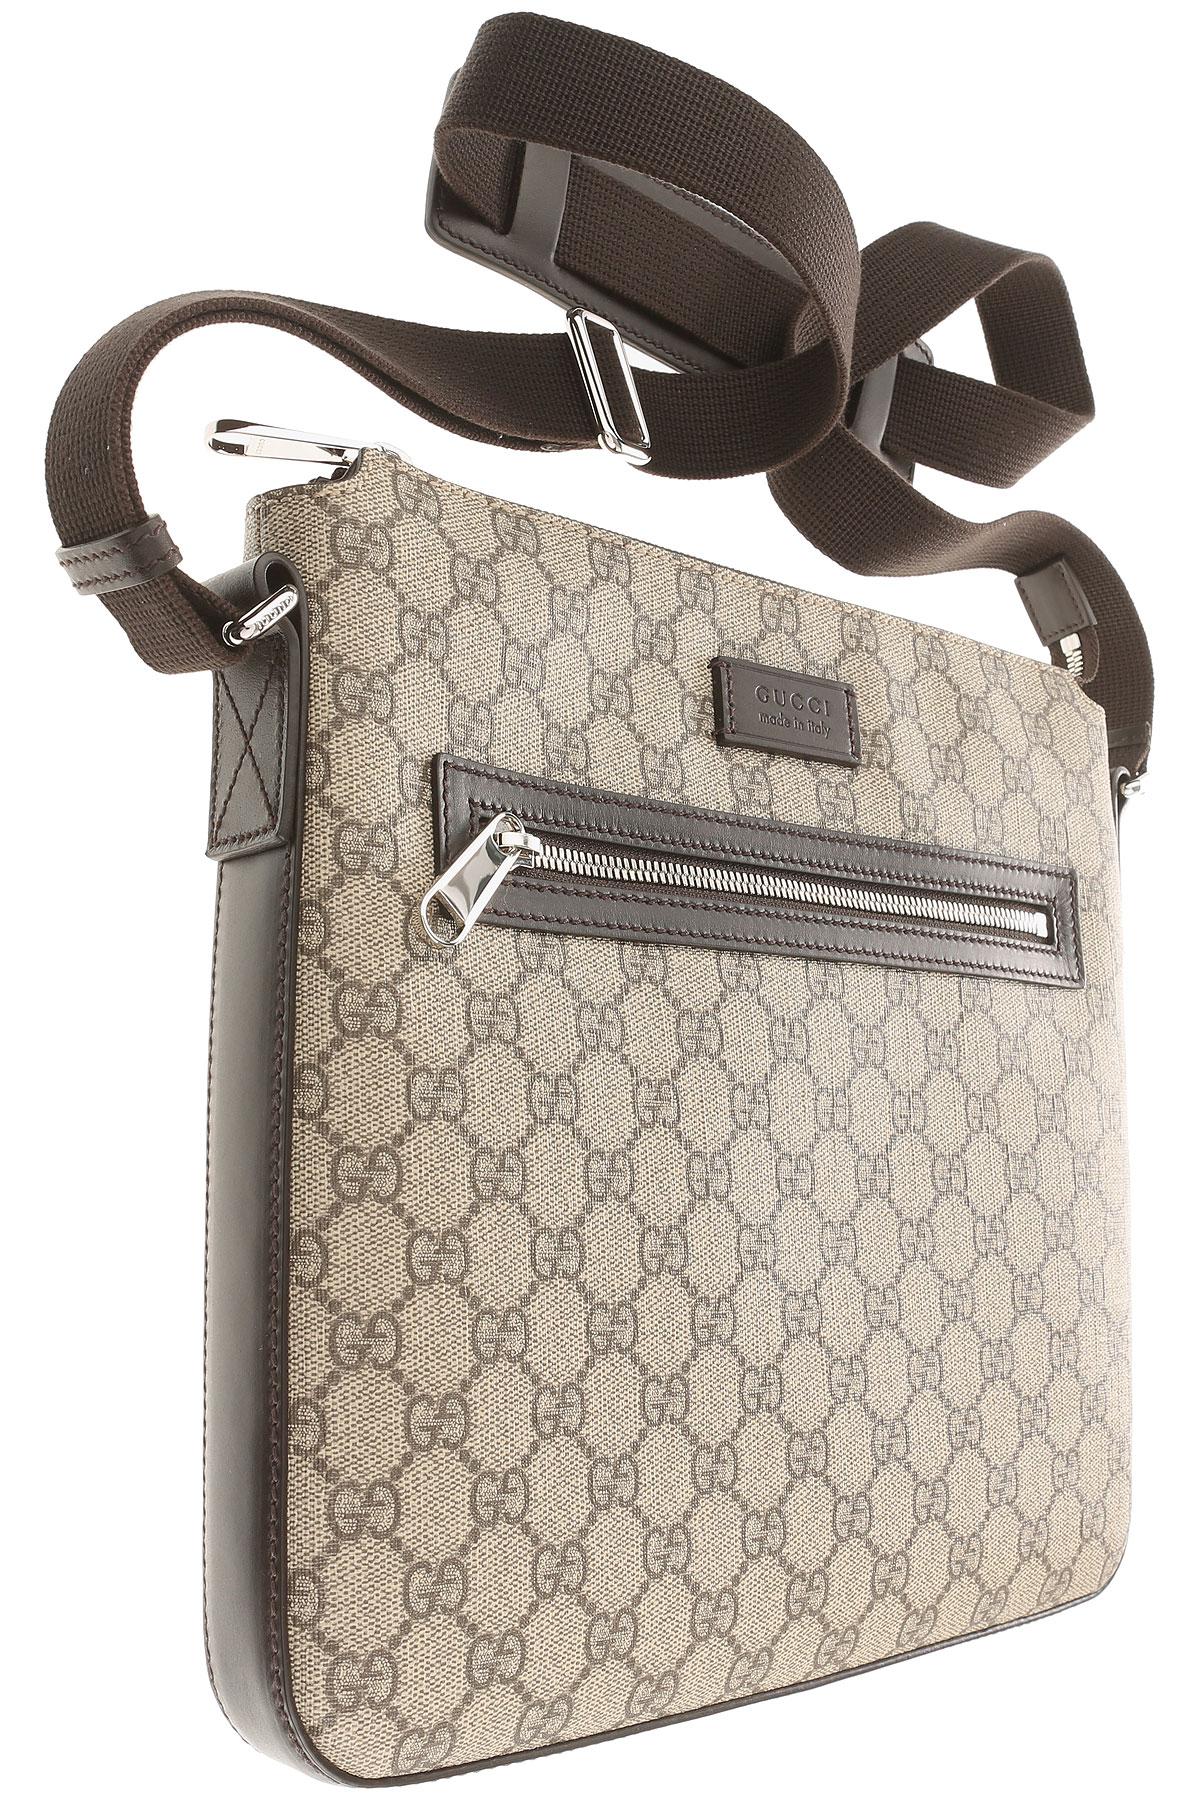 Gucci Leather Messenger Bag For Men On Sale in Beige (Natural) for Men - Lyst